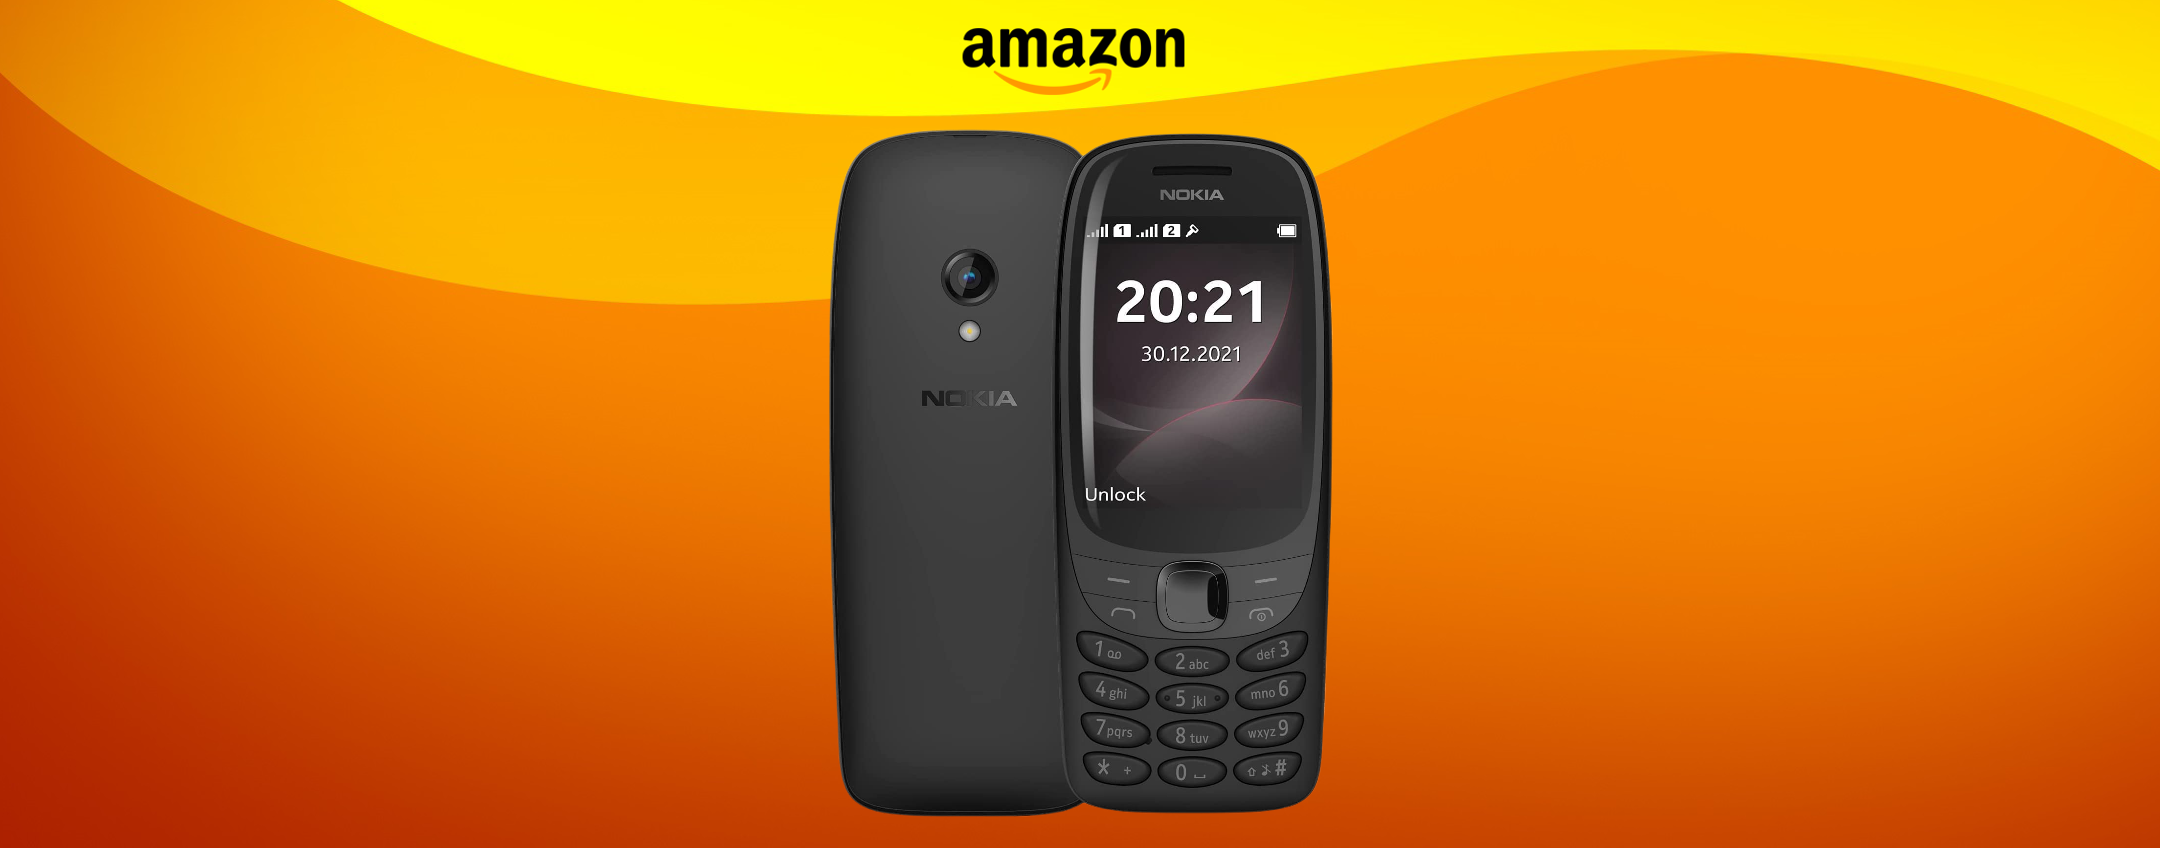 Nokia 6310: il cellulare più AMATO ritorna ad un super prezzo (52€)